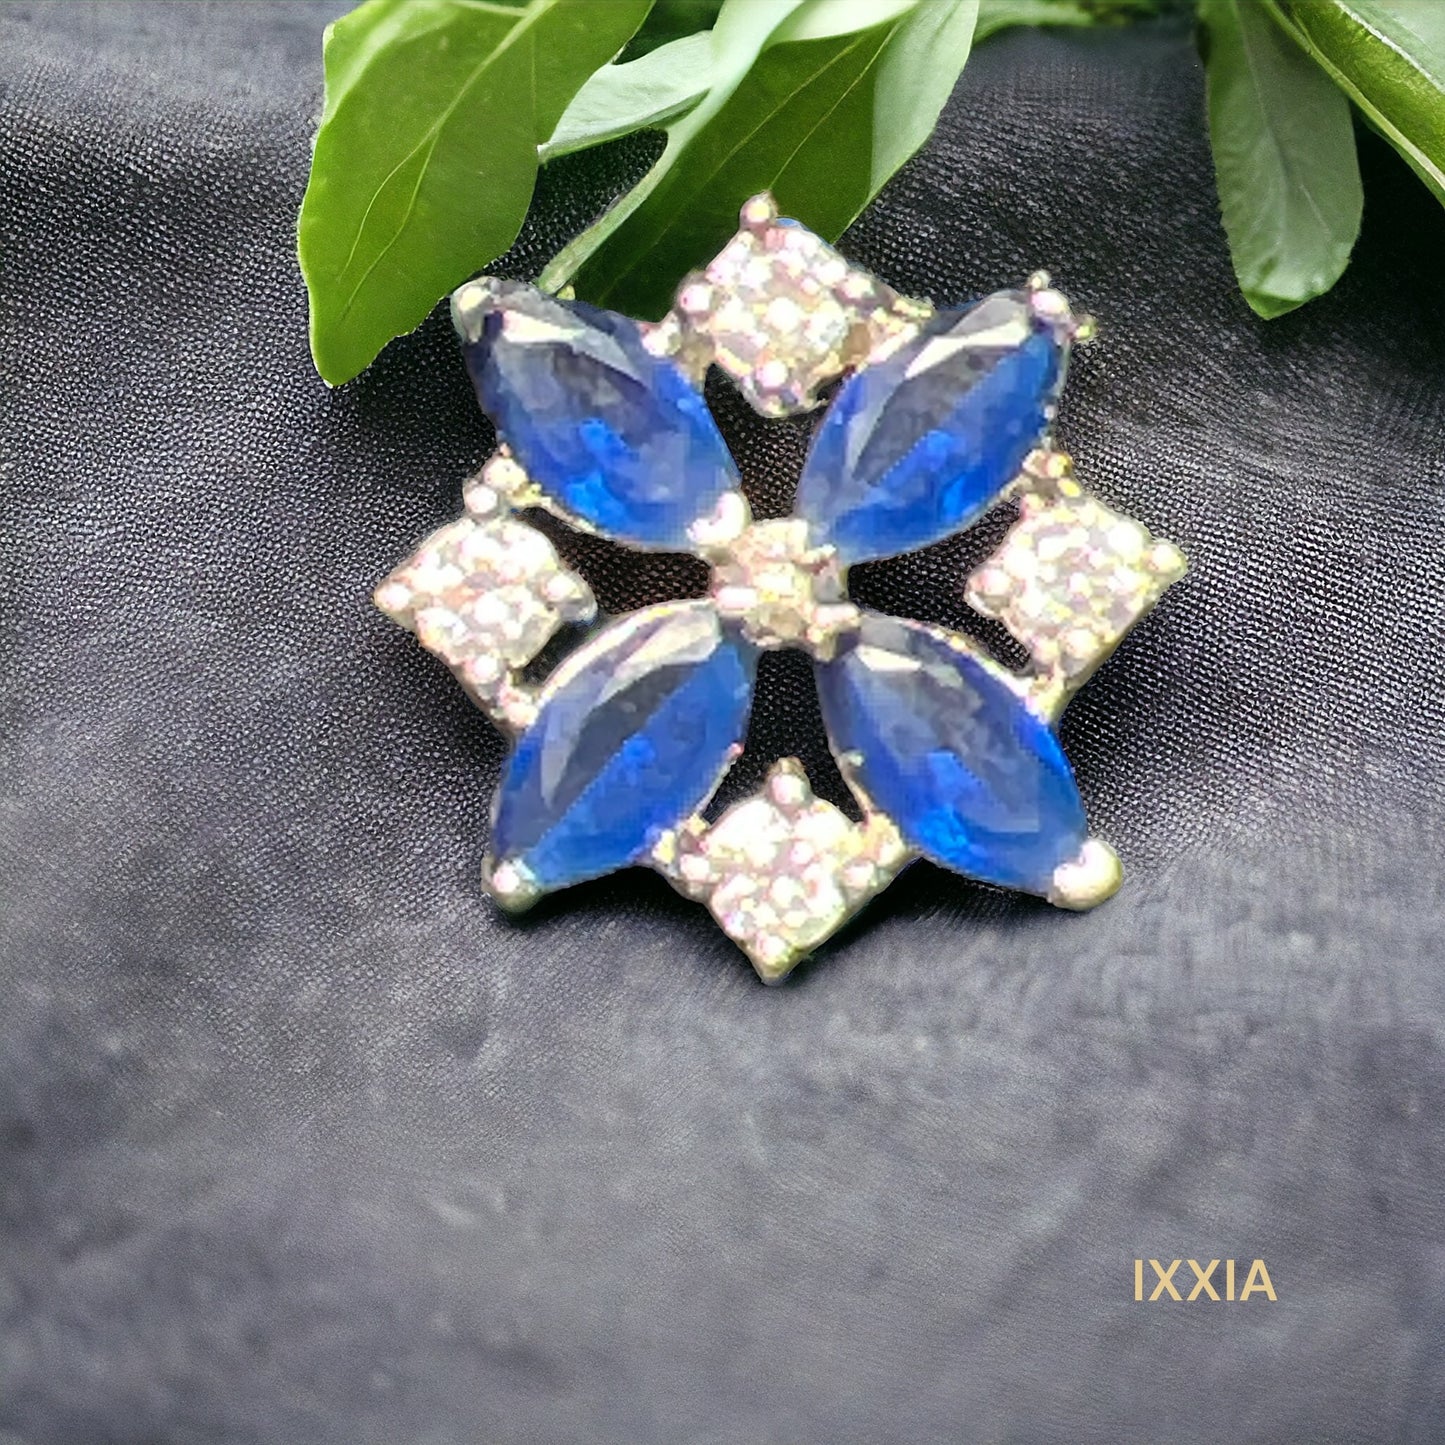 Blue ixxia stud earrings 